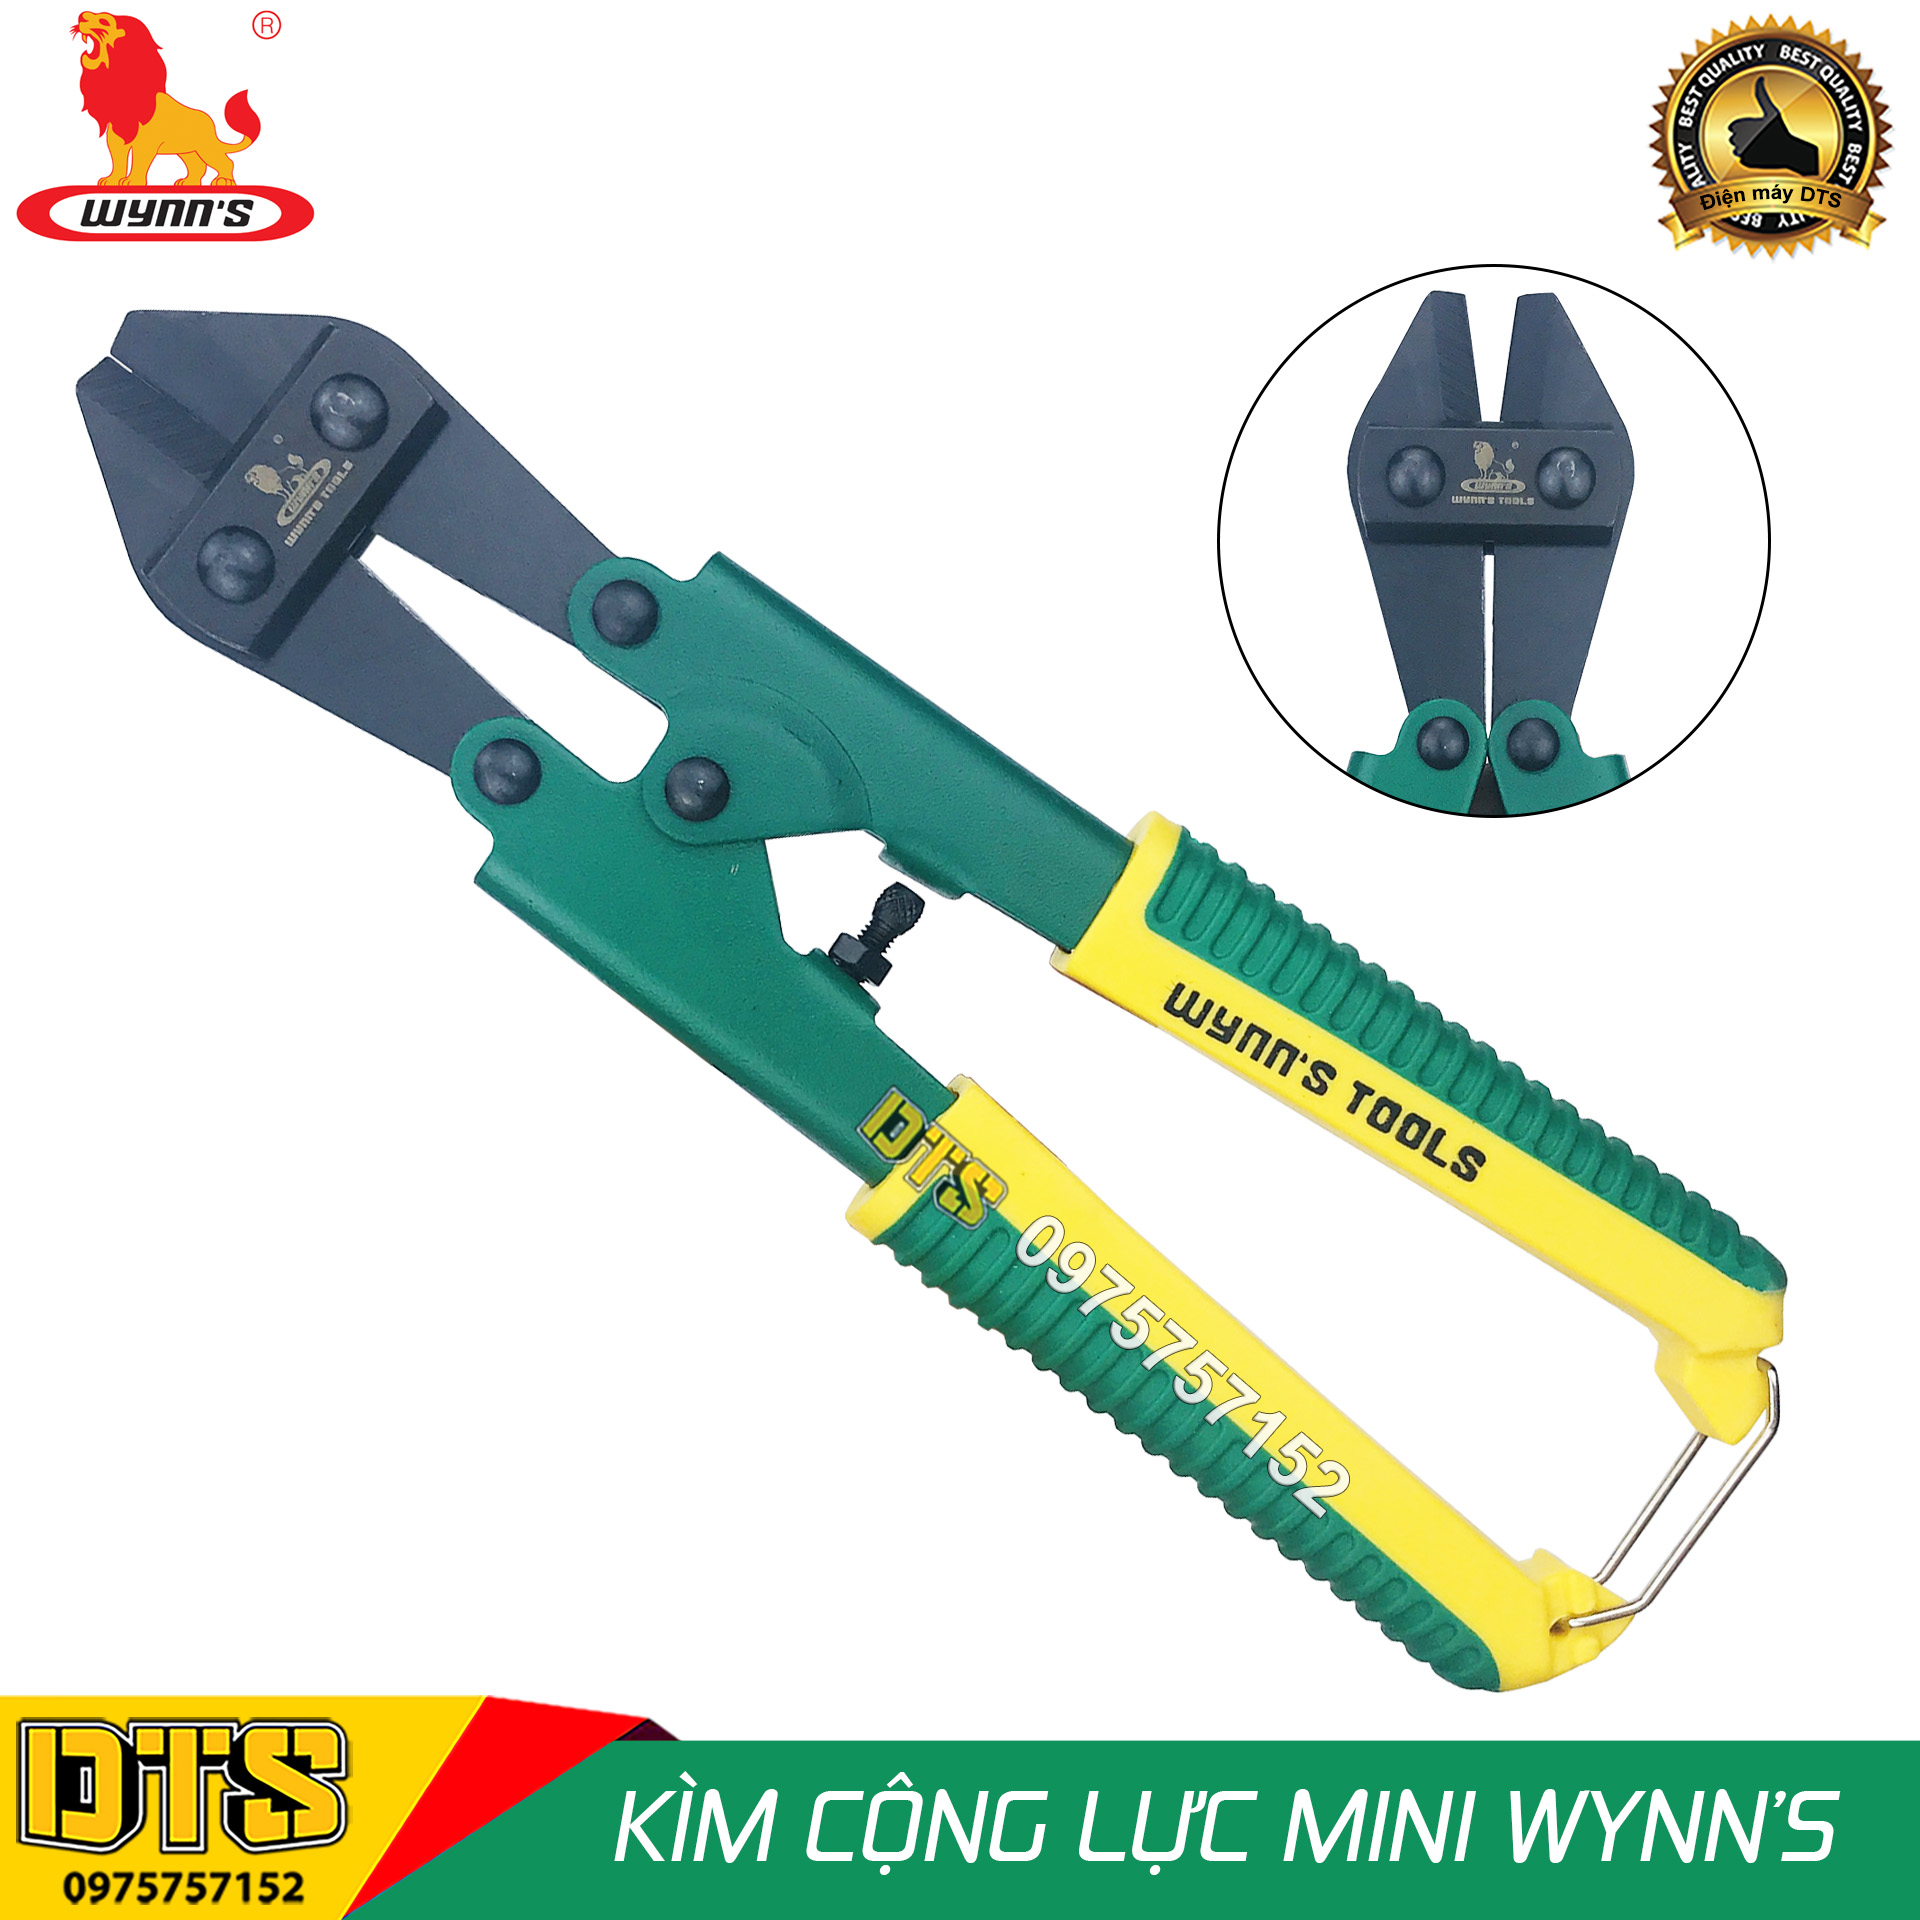 Kìm cộng lực Wynn’s W09 8 inch/ 200mm, kìm cắt sắt, dây thép chuyên nghiệp, kìm cộng lực tay mini chuyên dụng